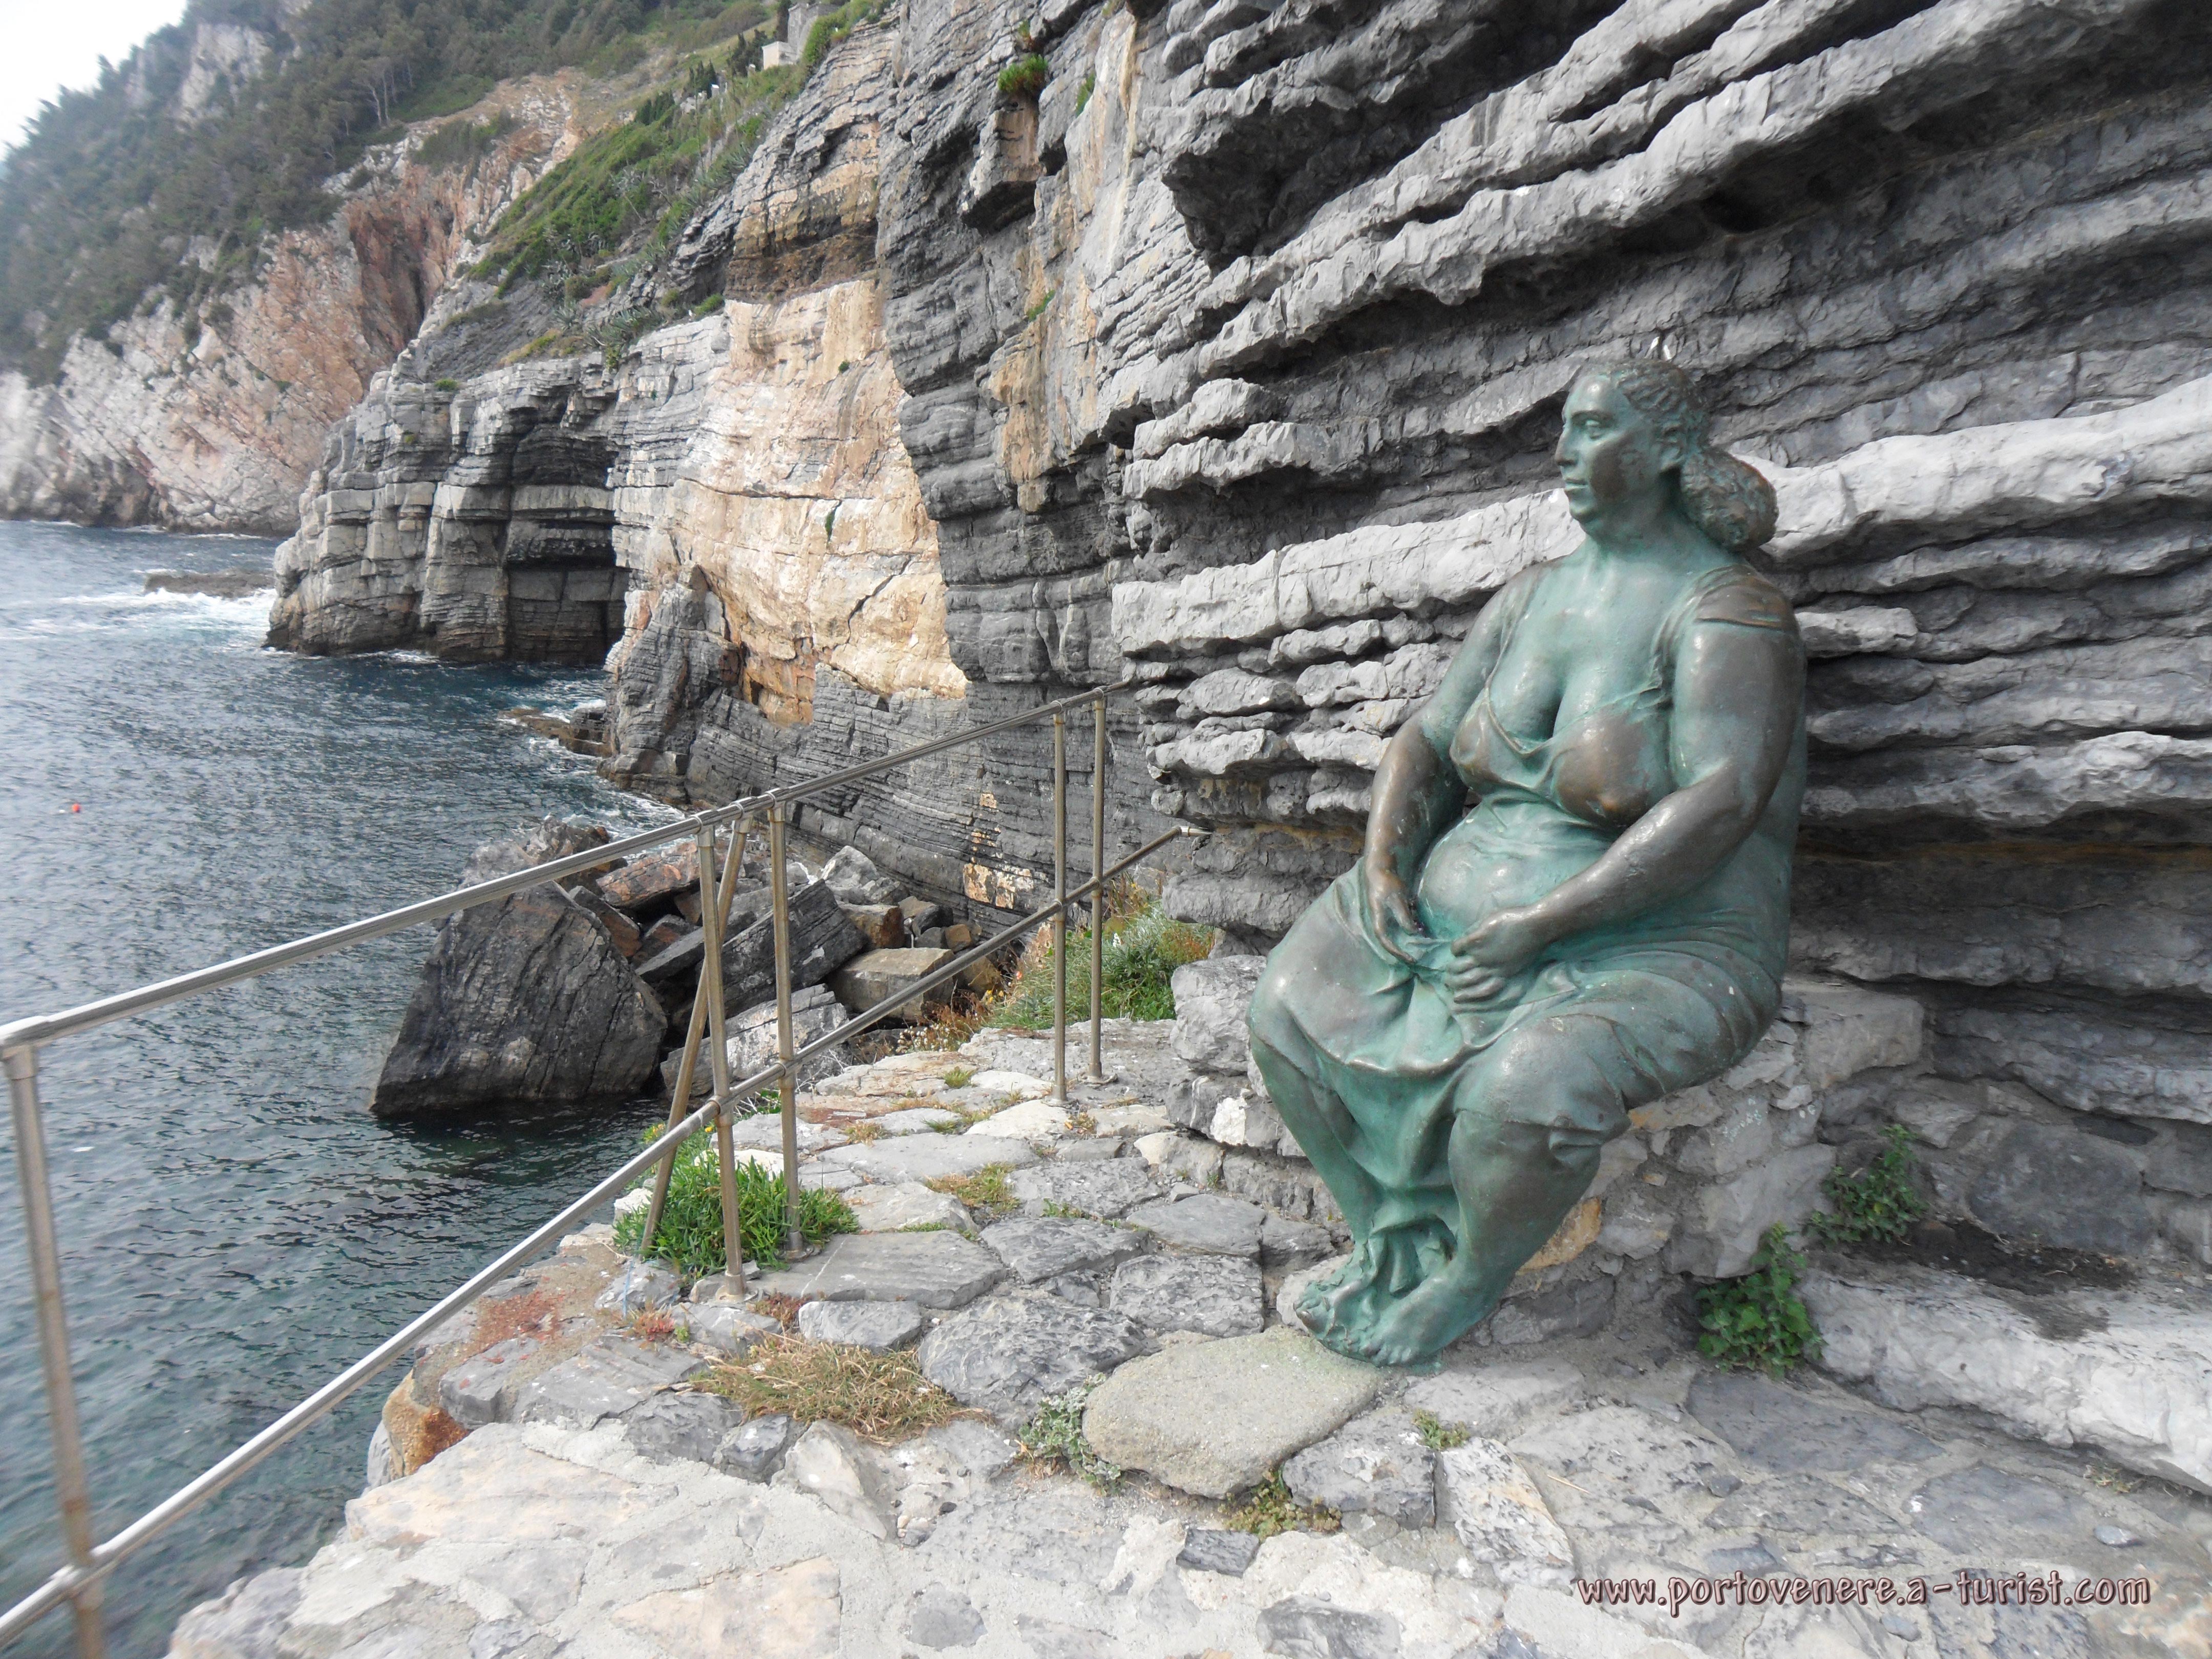 Portovenere, Mater Naturae - Rusałka w wykonaniu rzeźbiarza Scorzelli<br>4320x3240, 2.16 MB